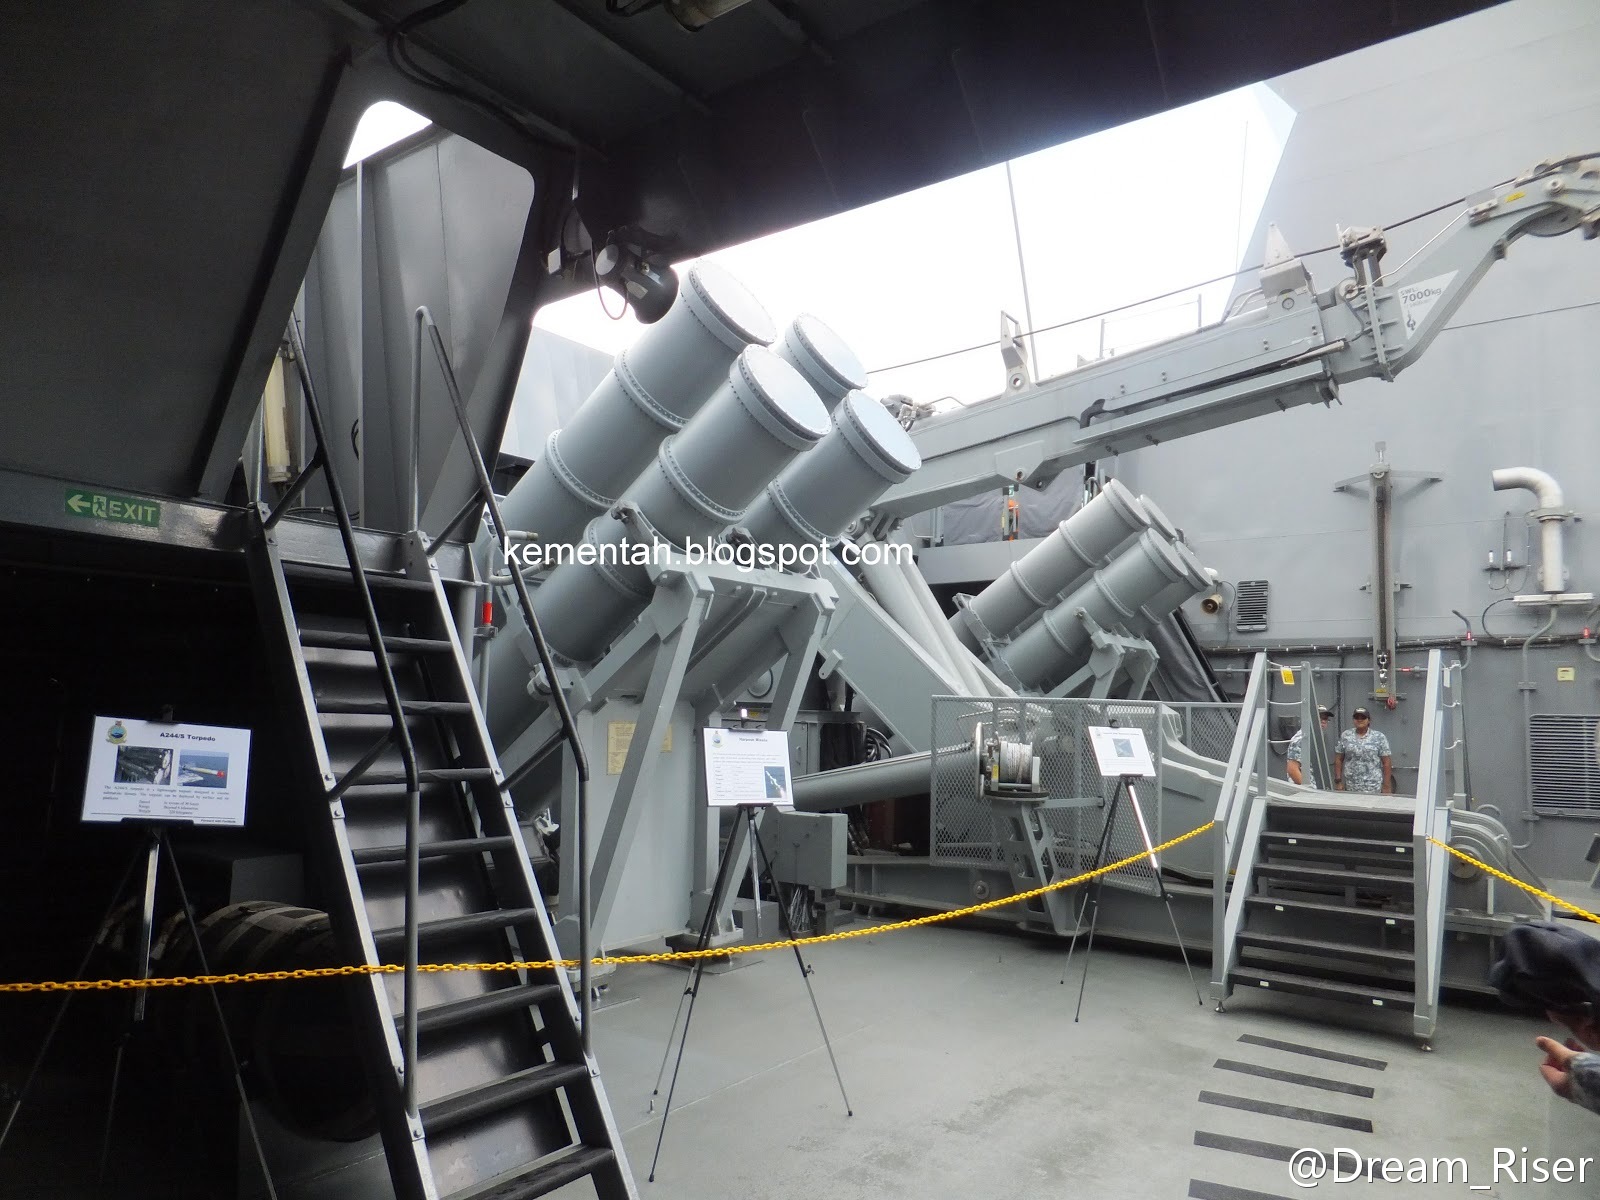 可畏級艦舯半埋式反艦飛彈發射架